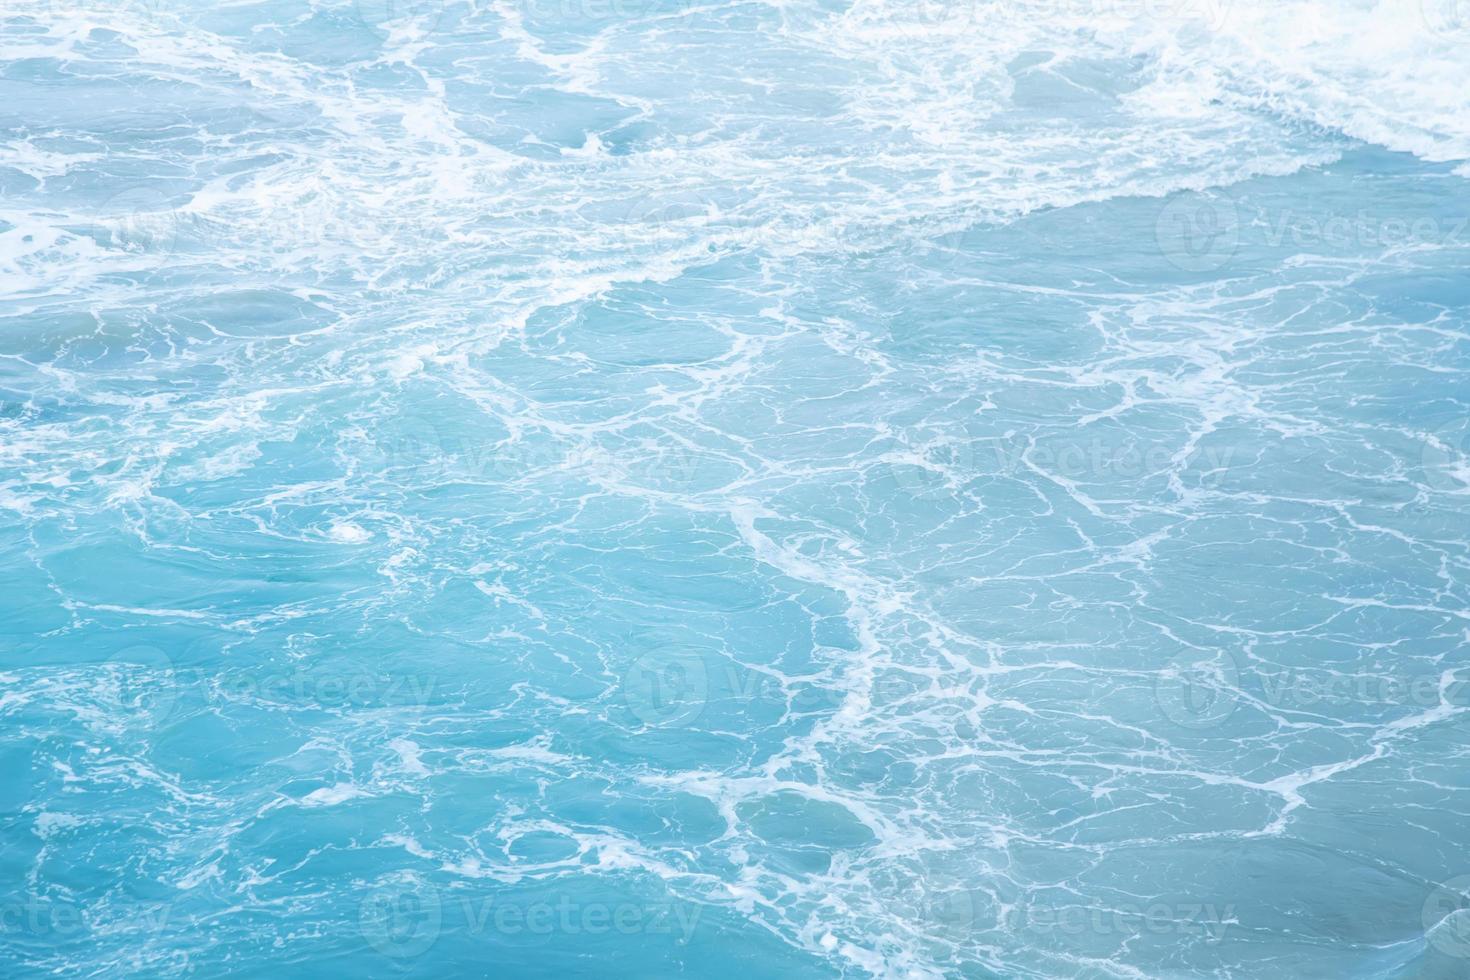 onde del mare nell'onda dell'oceano che spruzza l'acqua dell'ondulazione. sfondo blu acqua. lasciare spazio per scrivere un testo descrittivo. foto